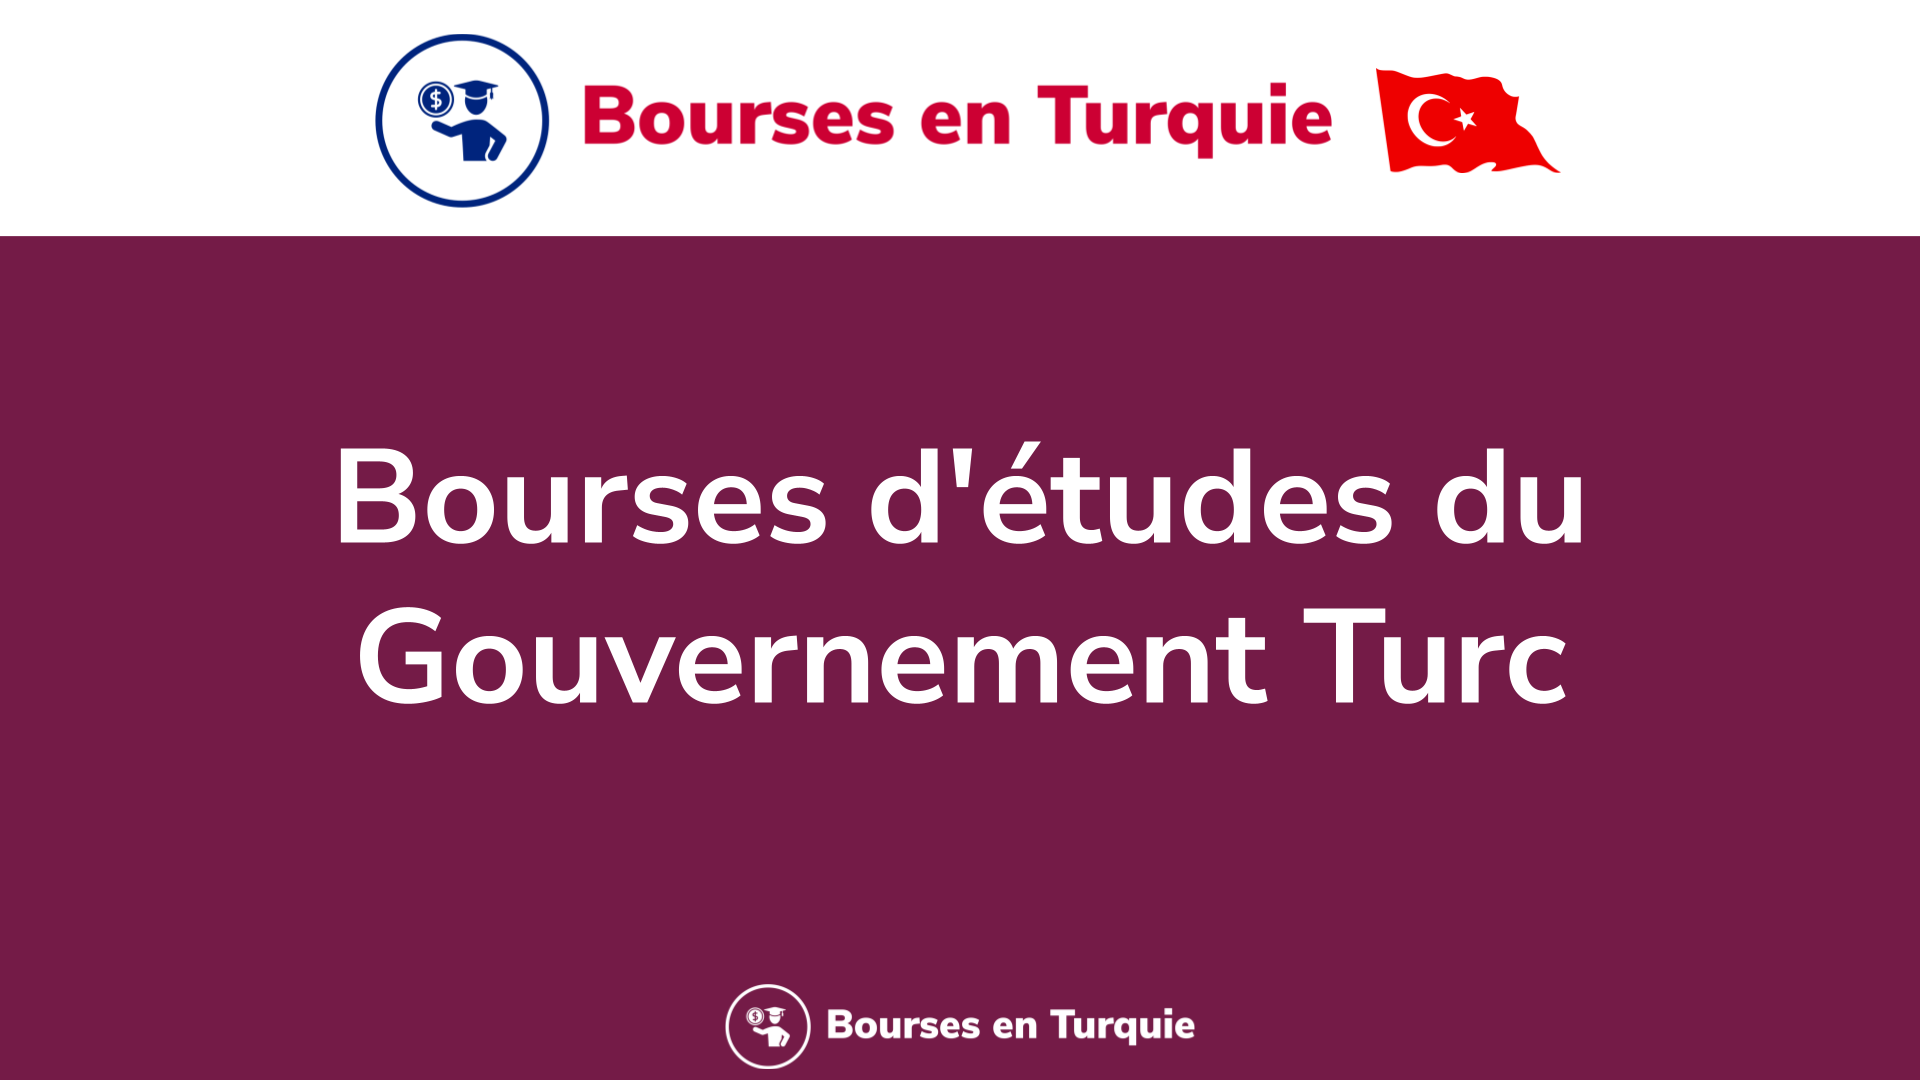 Bourses d'études du Gouvernement Turc